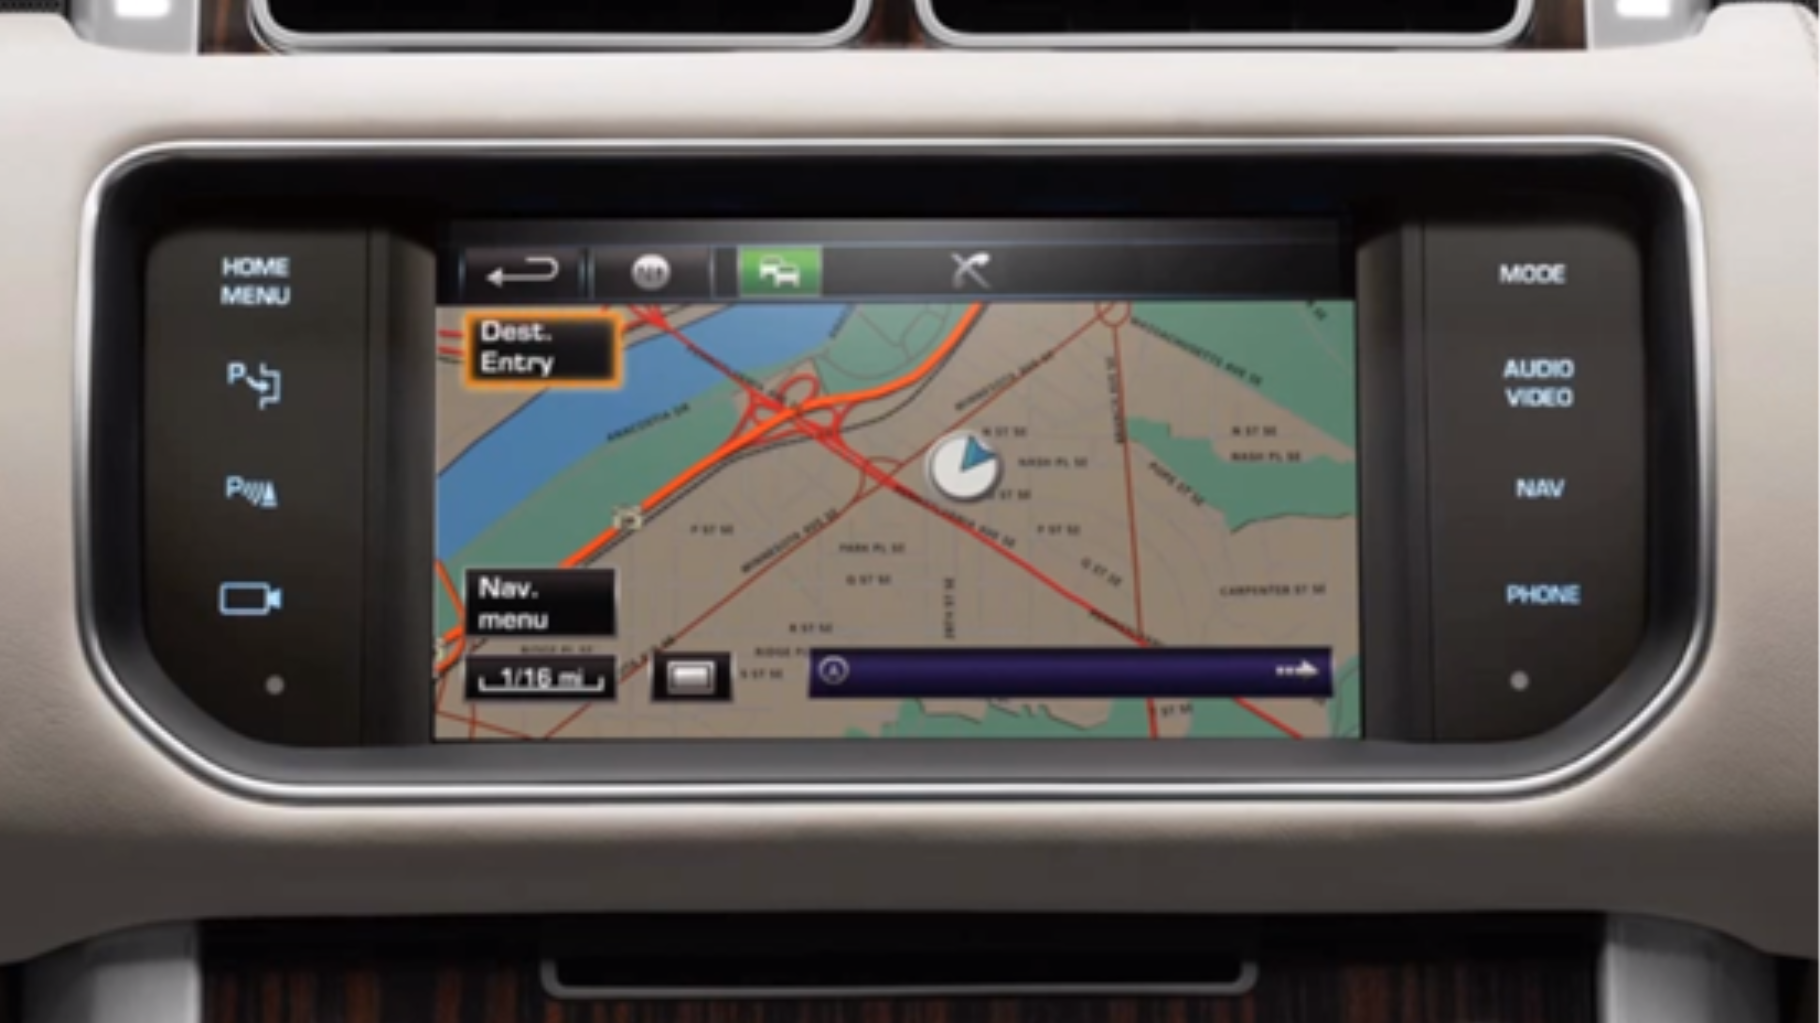 Range Rover Sport Navigation System